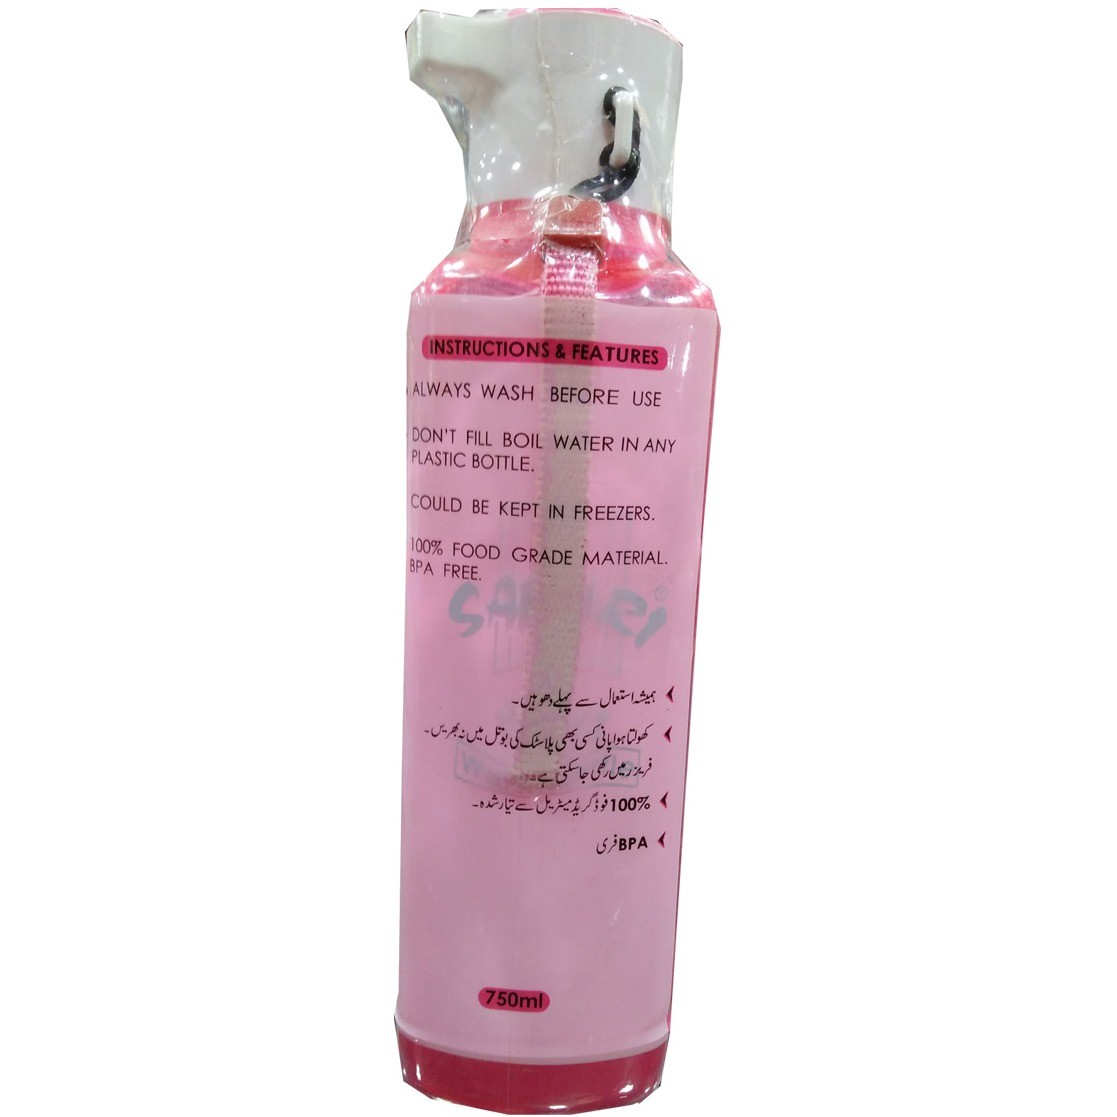 Safari Water bottle for Girls - Pink